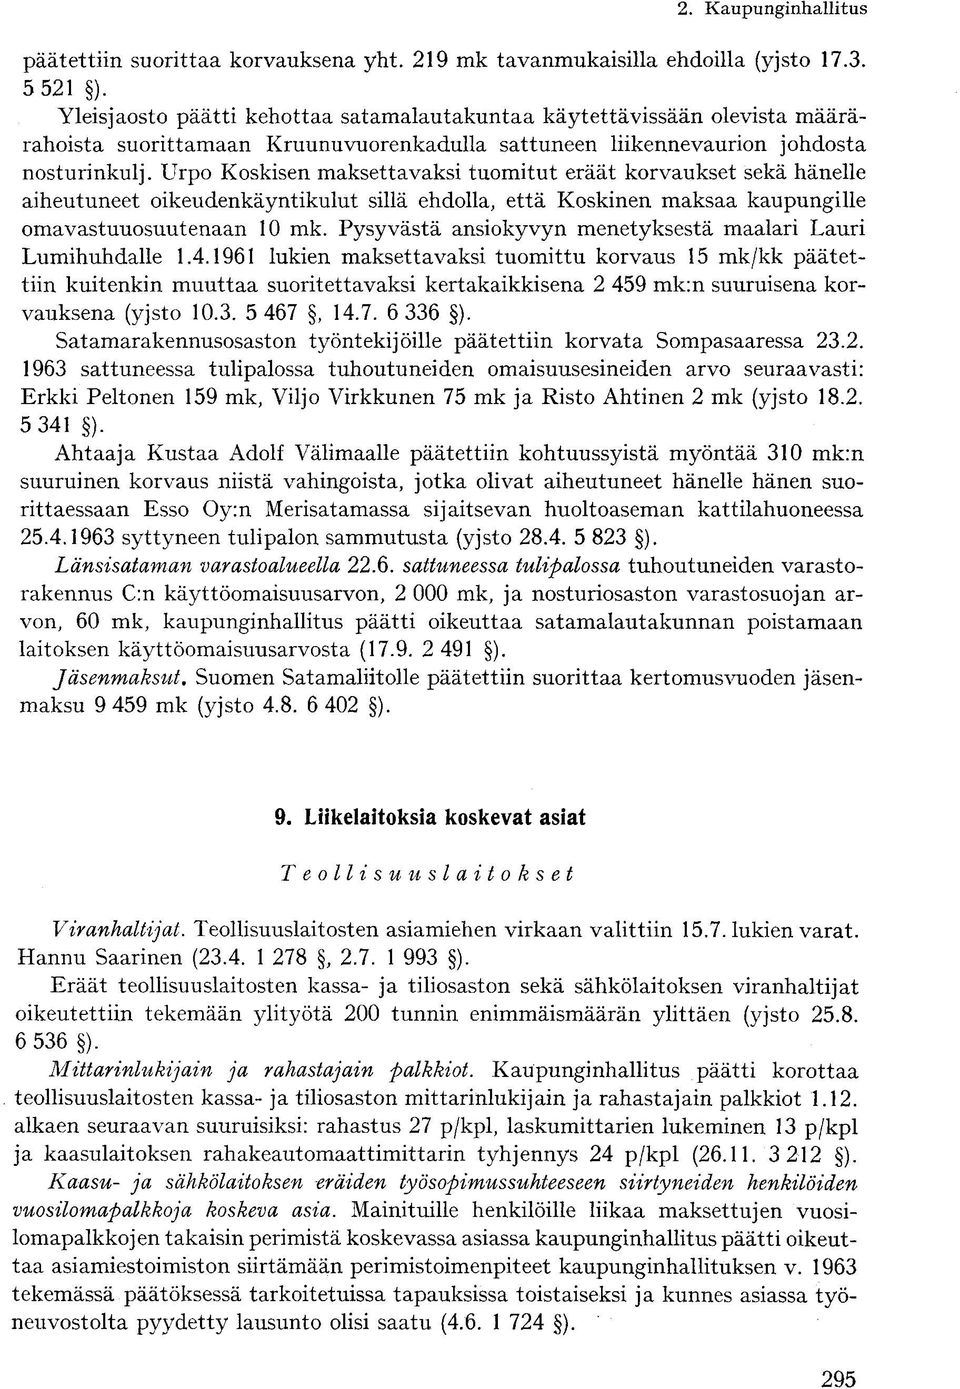 Urpo Koskisen maksettavaksi tuomitut eräät korvaukset sekä hänelle aiheutuneet oikeudenkäyntikulut sillä ehdolla, että Koskinen maksaa kaupungille omavastuuosuutenaan 10 mk.